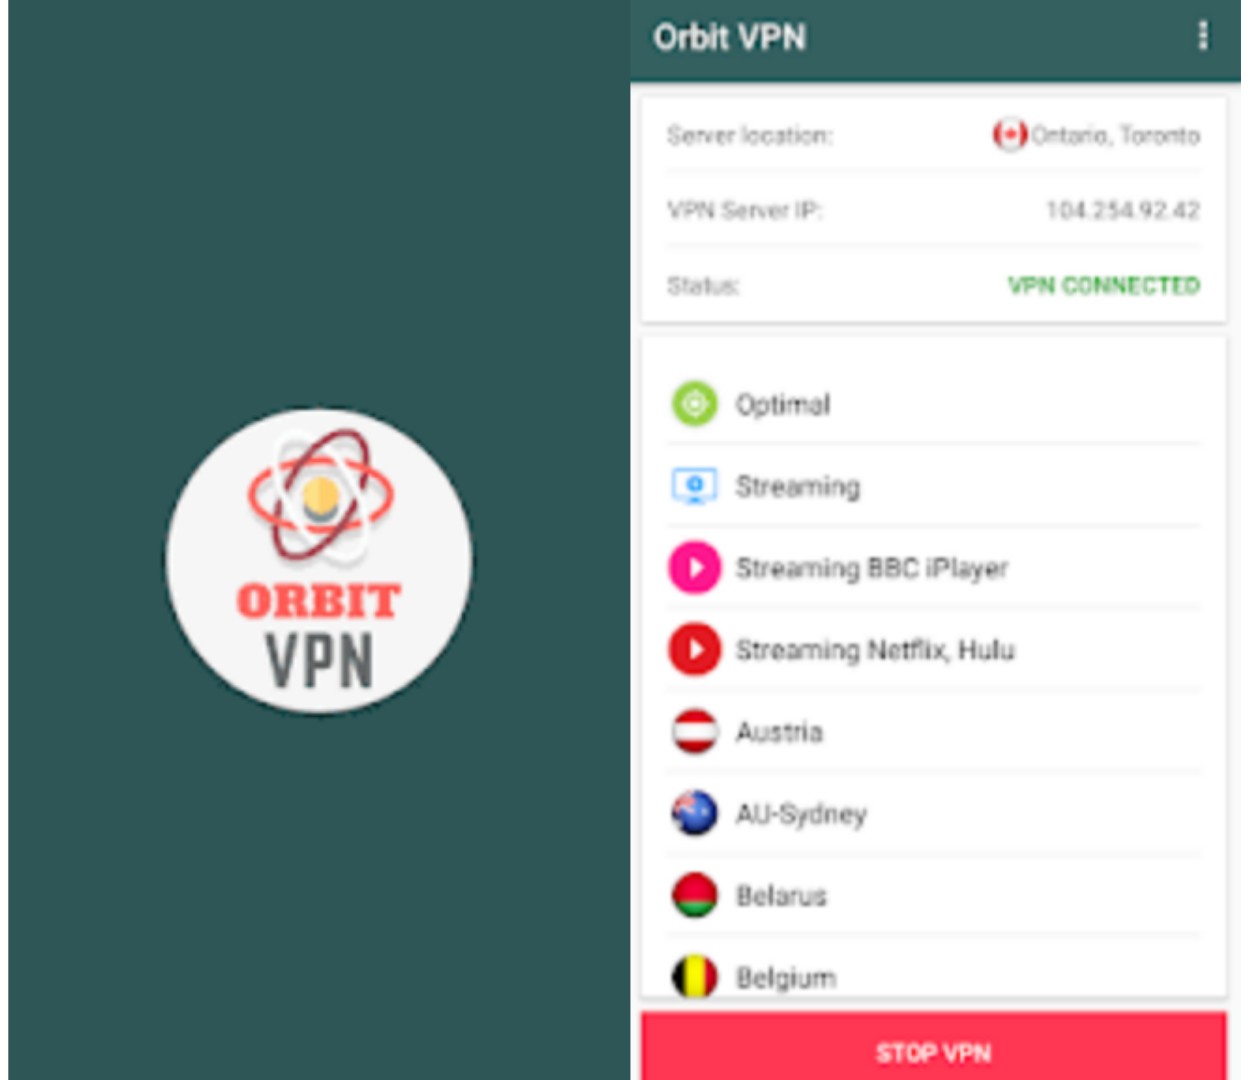 Download Orbit VPN - Aplikasi VPN Gratis Yang Memiliki Banyak Server [Recomended]